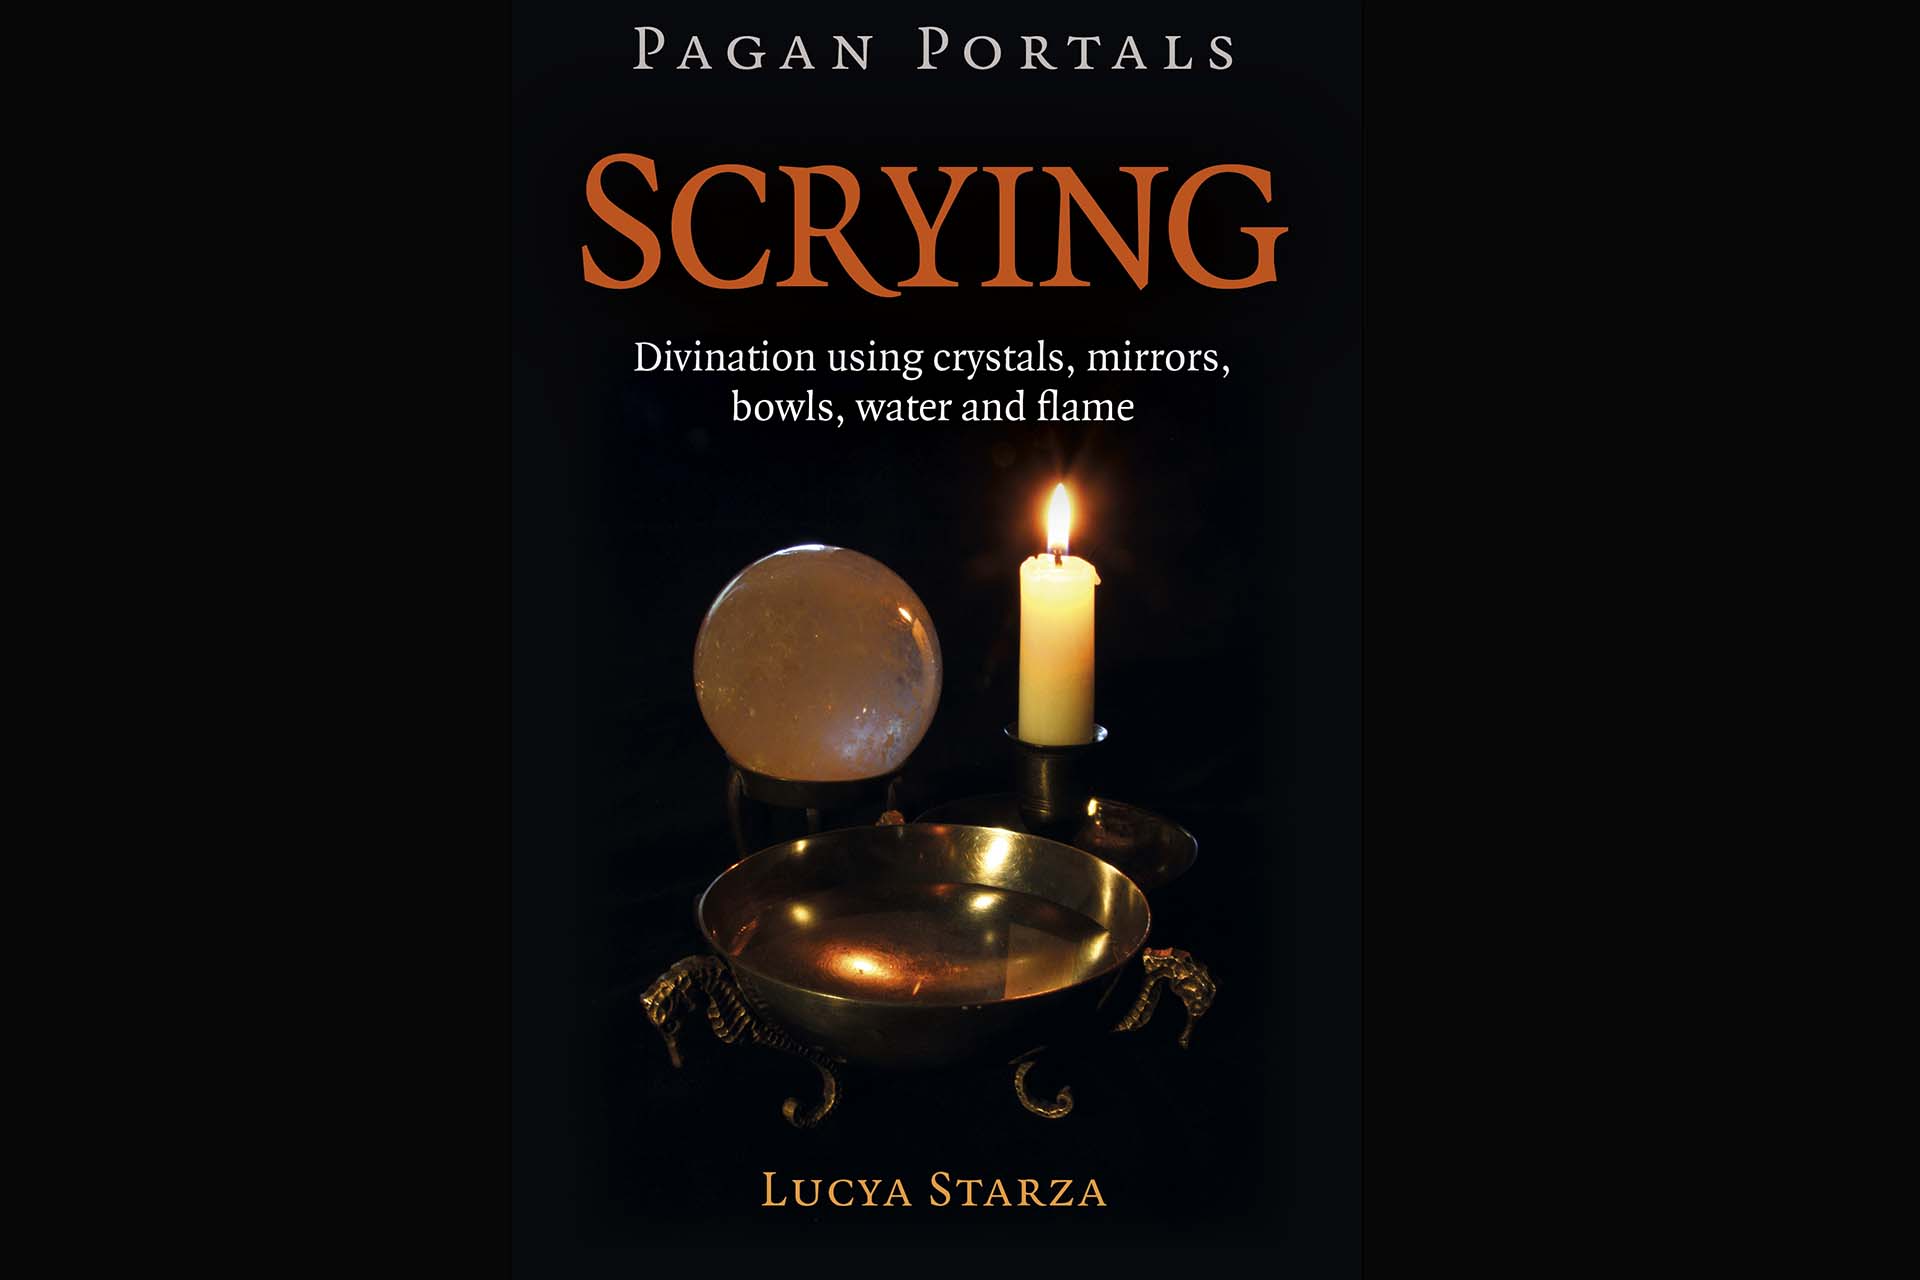 Pagan Portals - Scrying